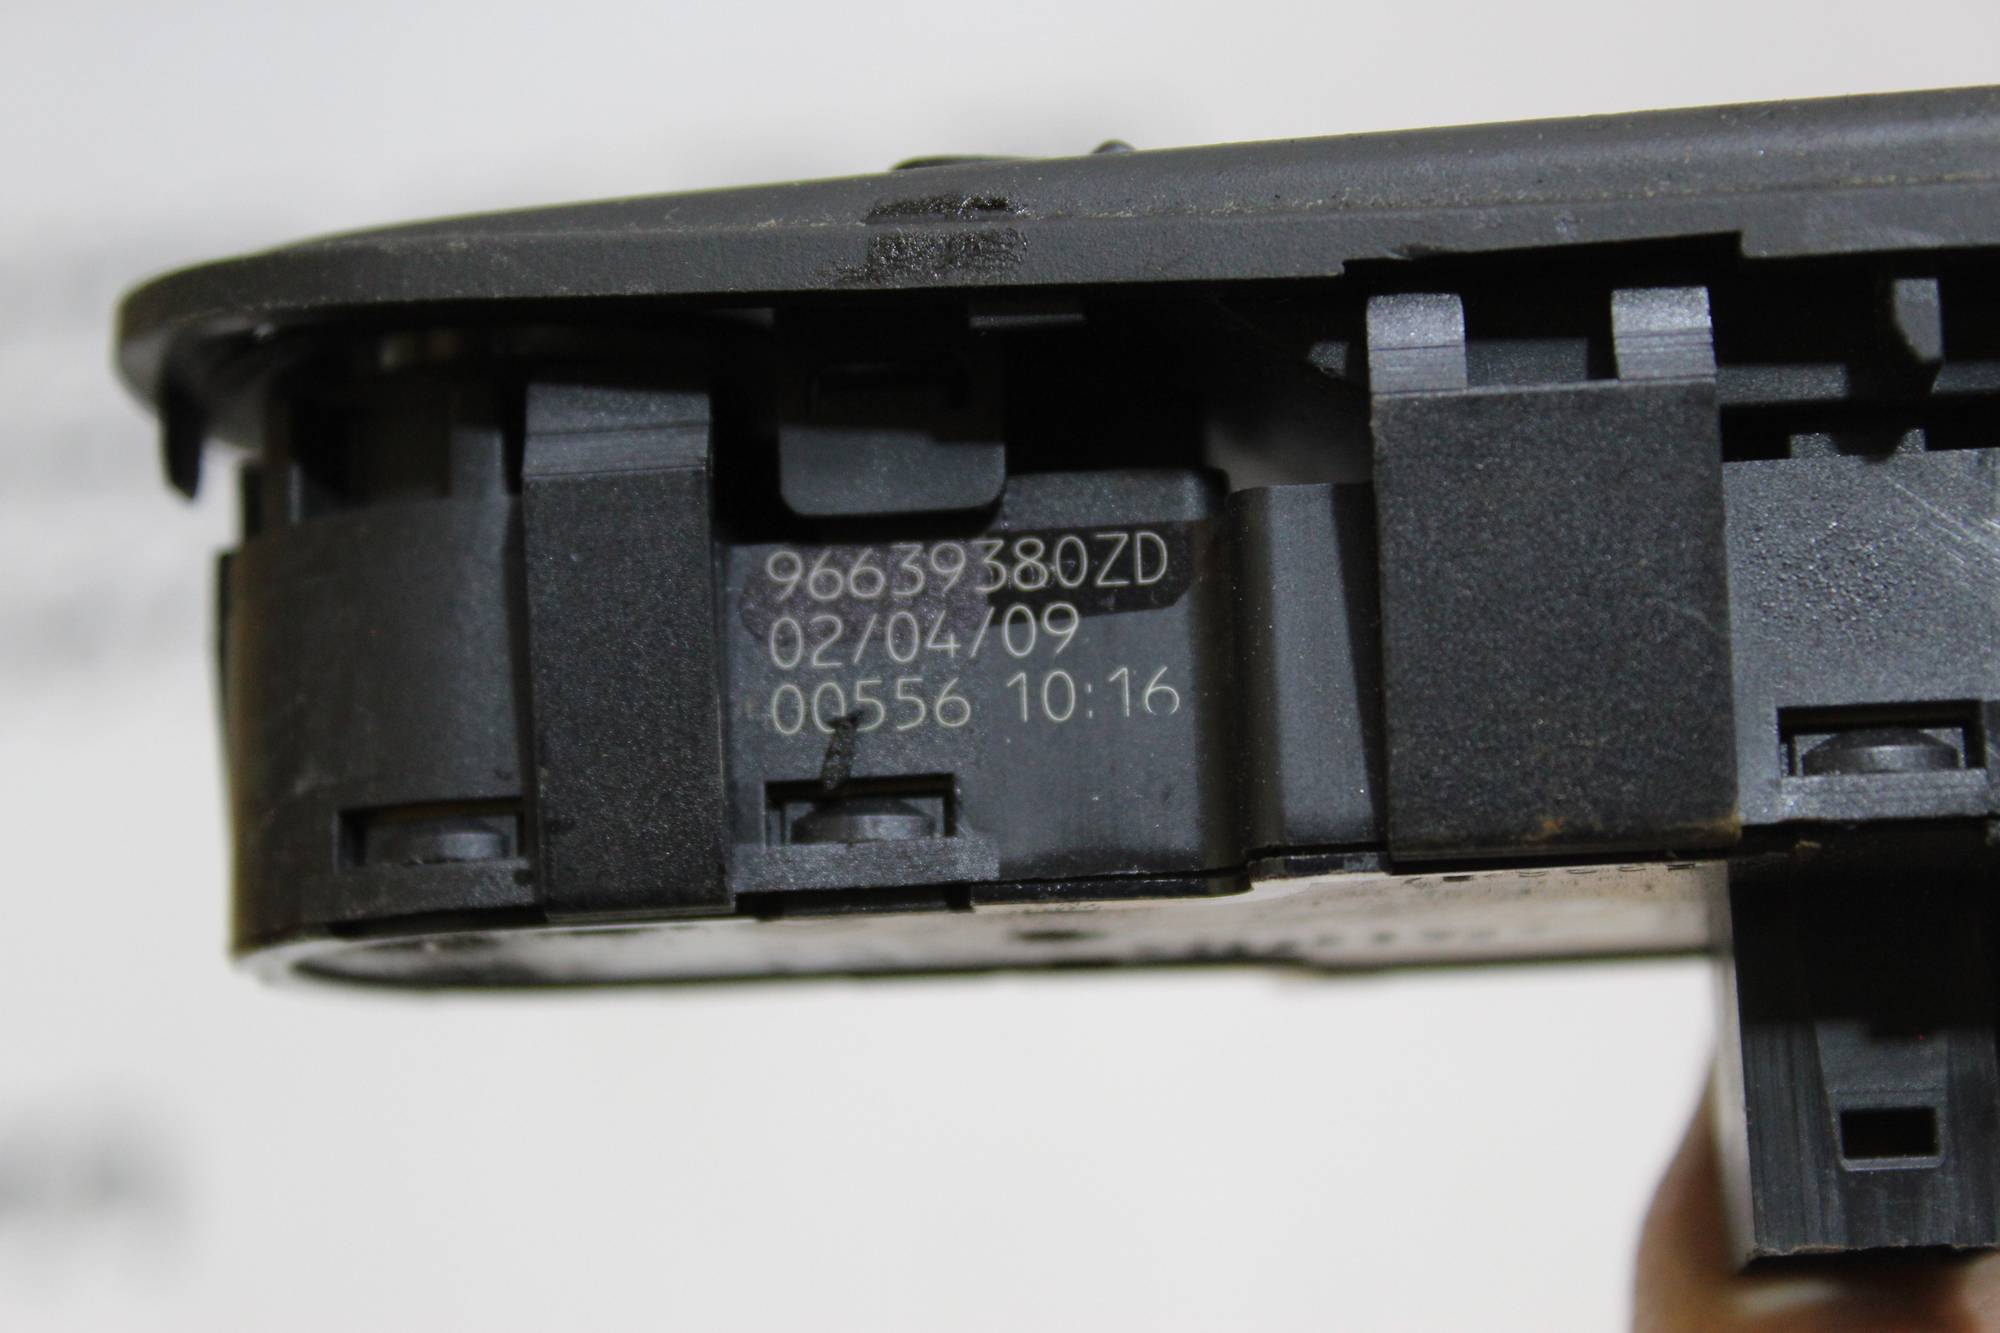 Блок керування склопідіймачами передній лівий Citroen C4 Picasso  96639383ZD, 6554.YH (ID#1963551815), цена: 1900 ₴, купить на